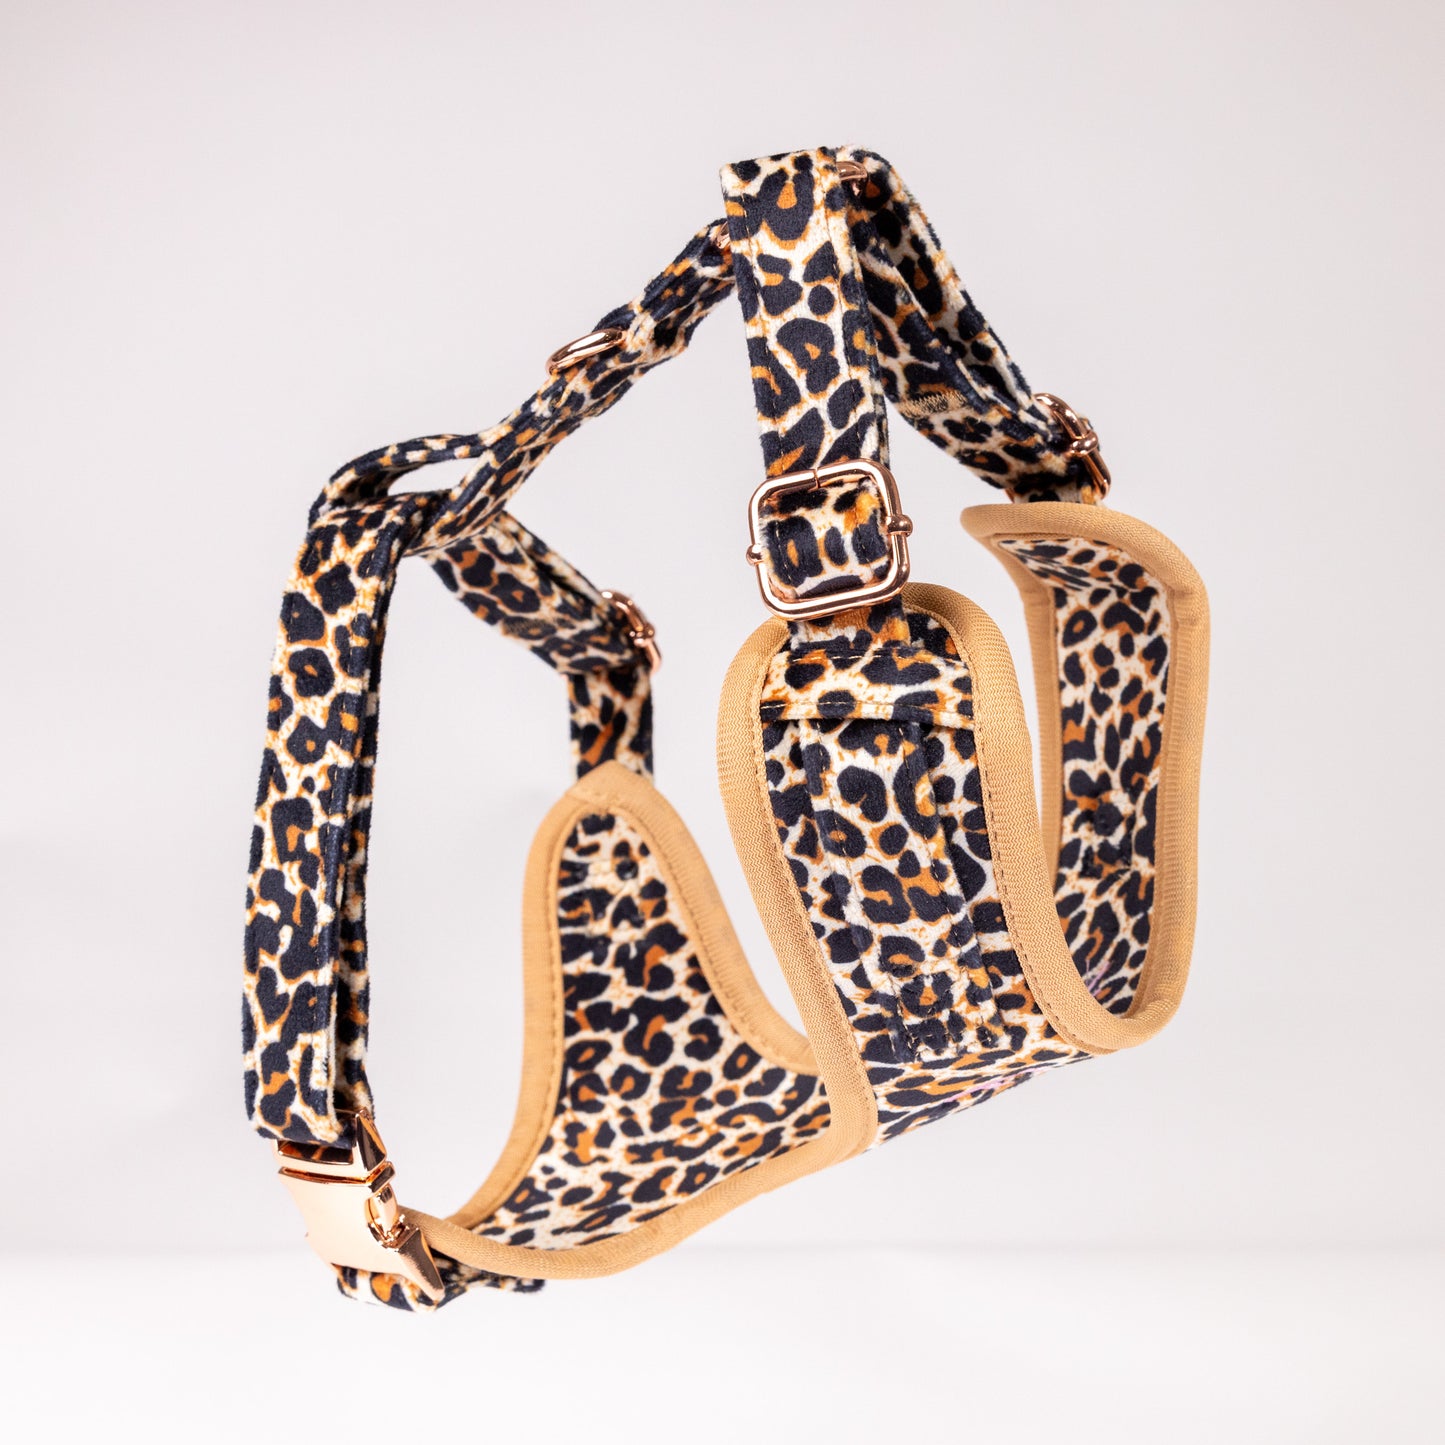 Presley Leopard Luxury Velvet Harness